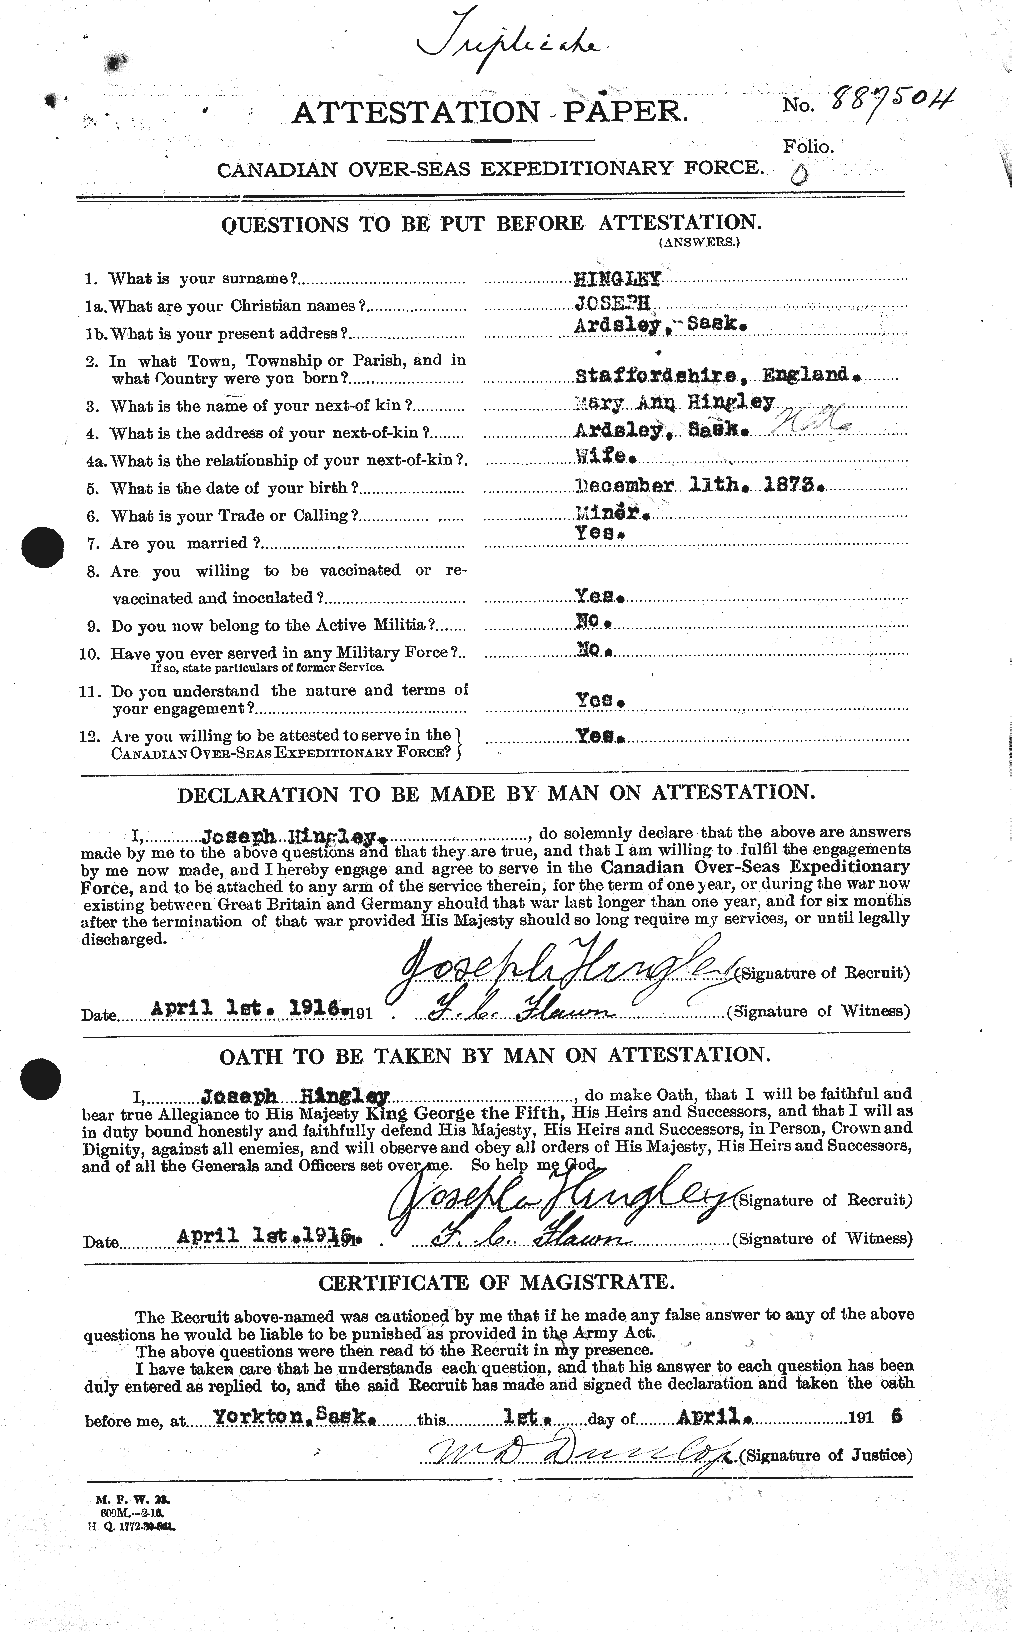 Dossiers du Personnel de la Première Guerre mondiale - CEC 394549a